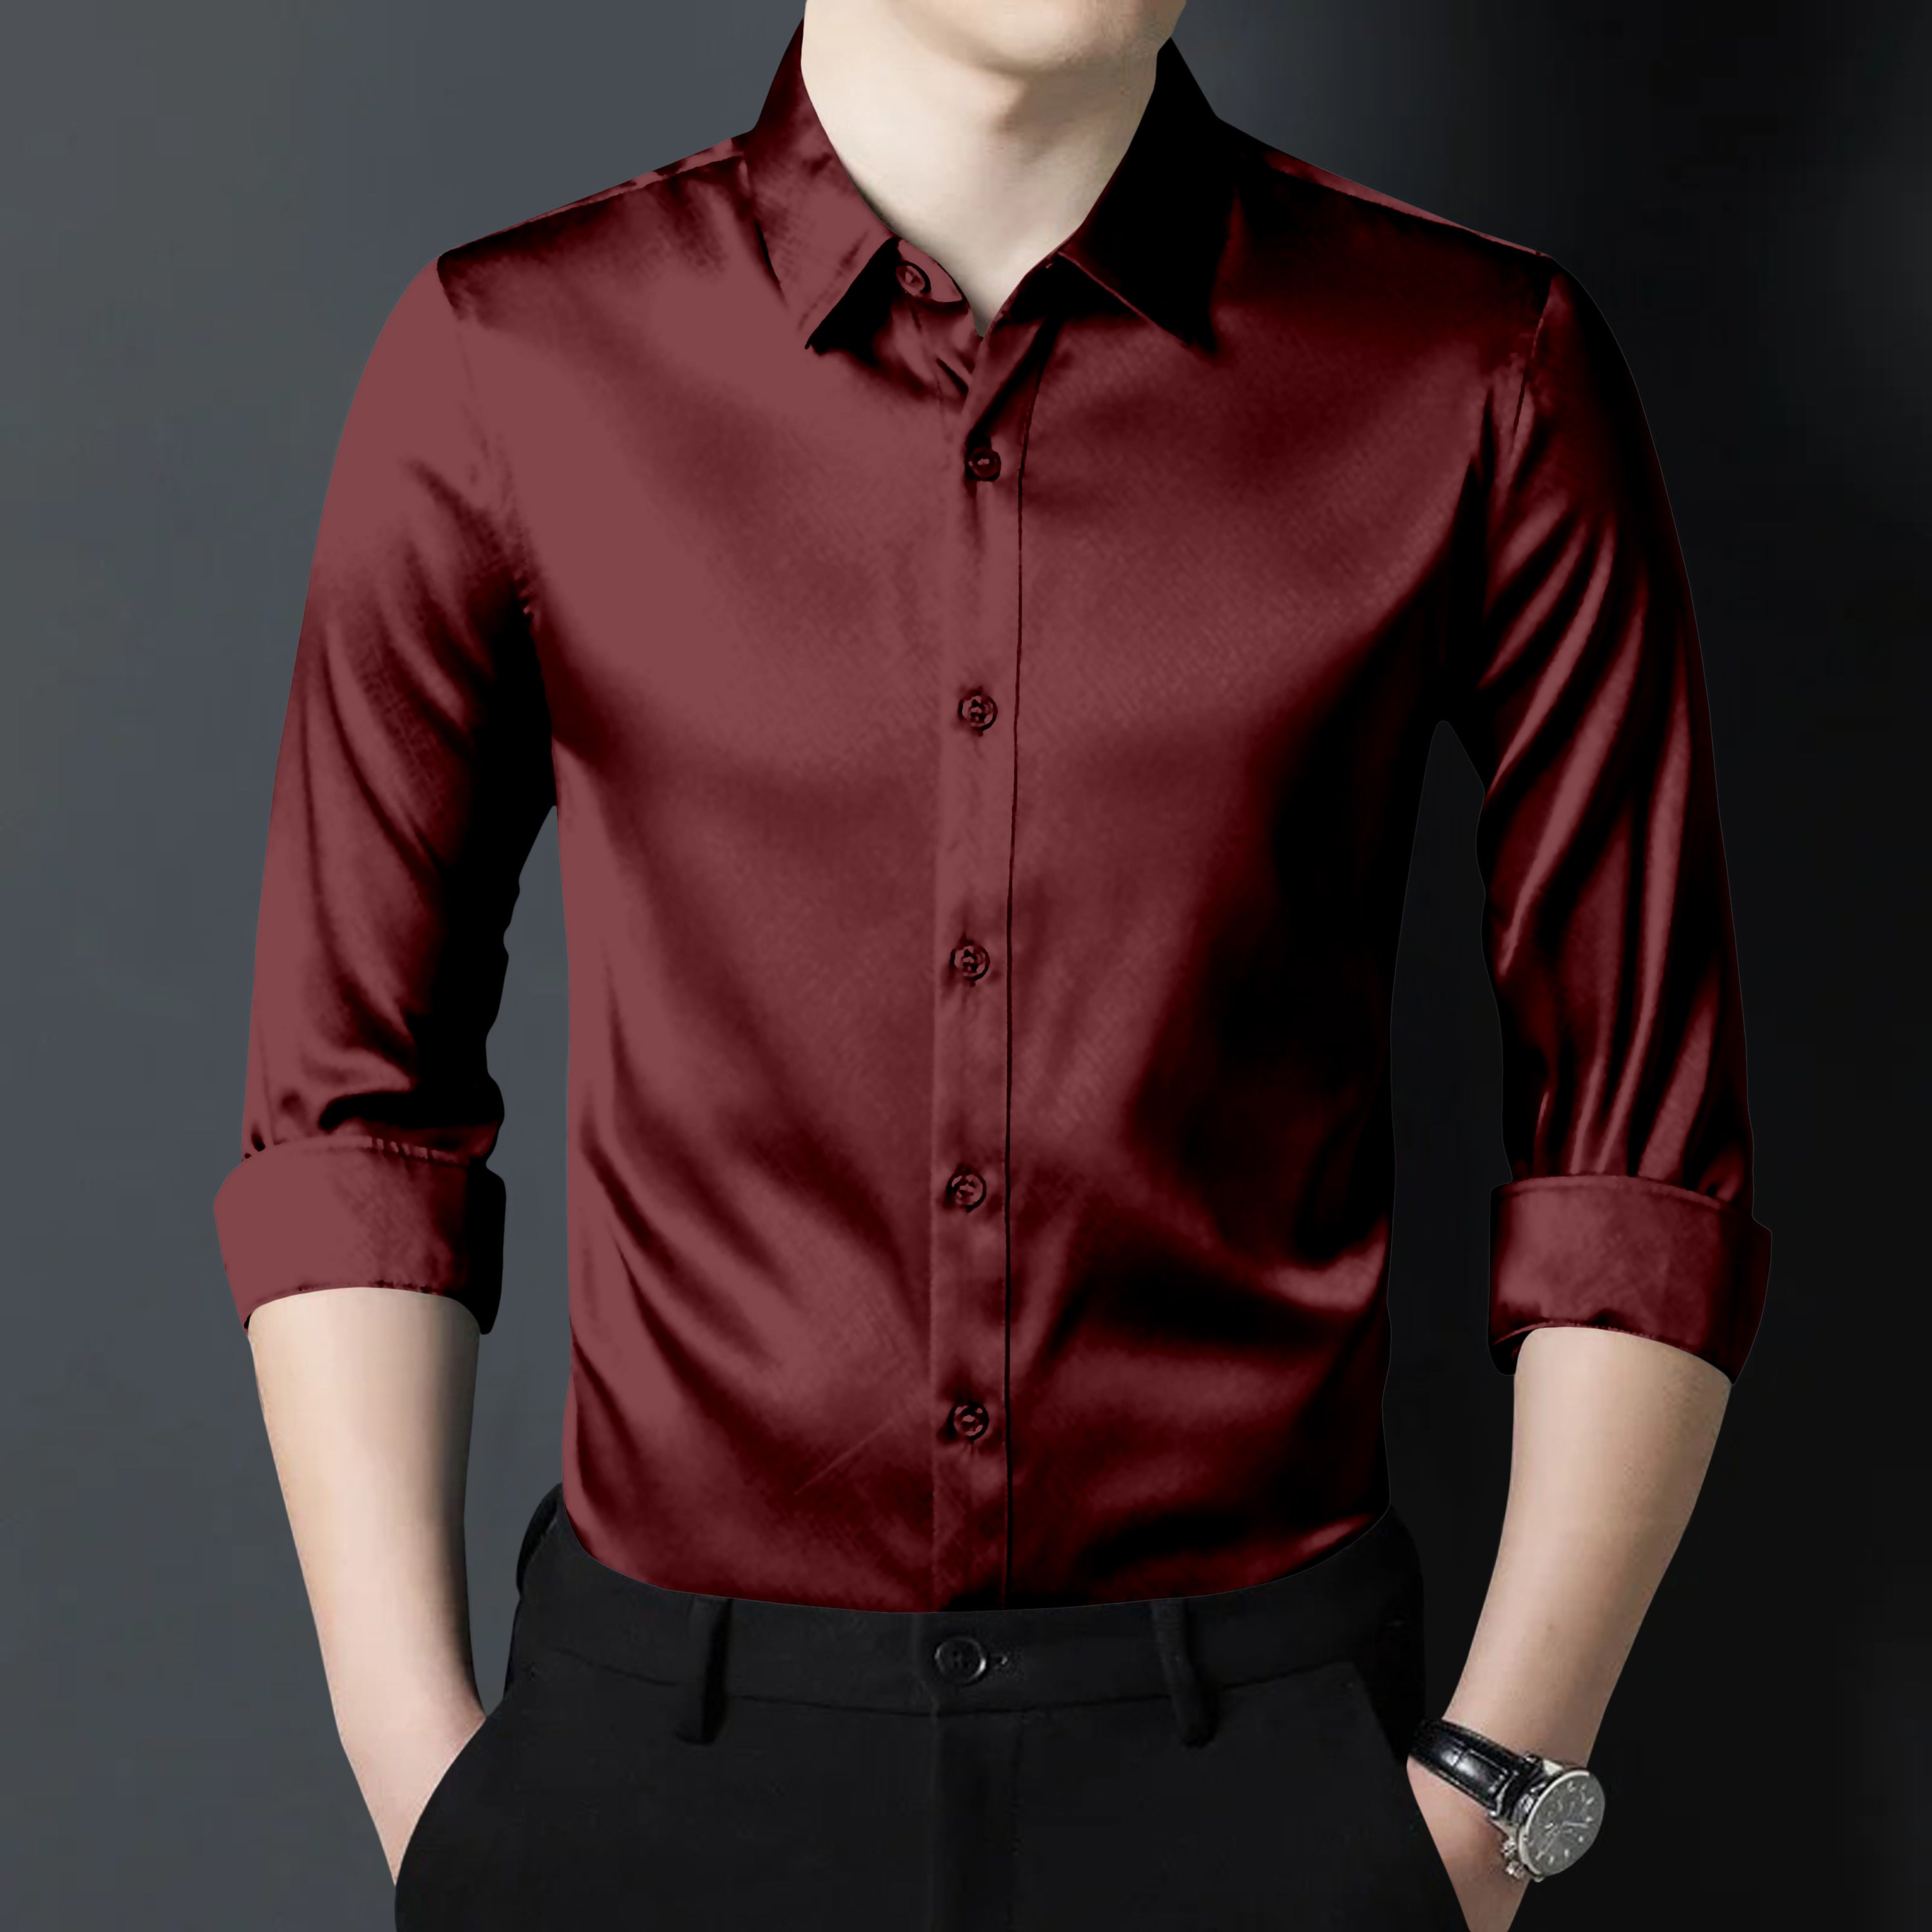 Currant Red Premium Satin Shirt